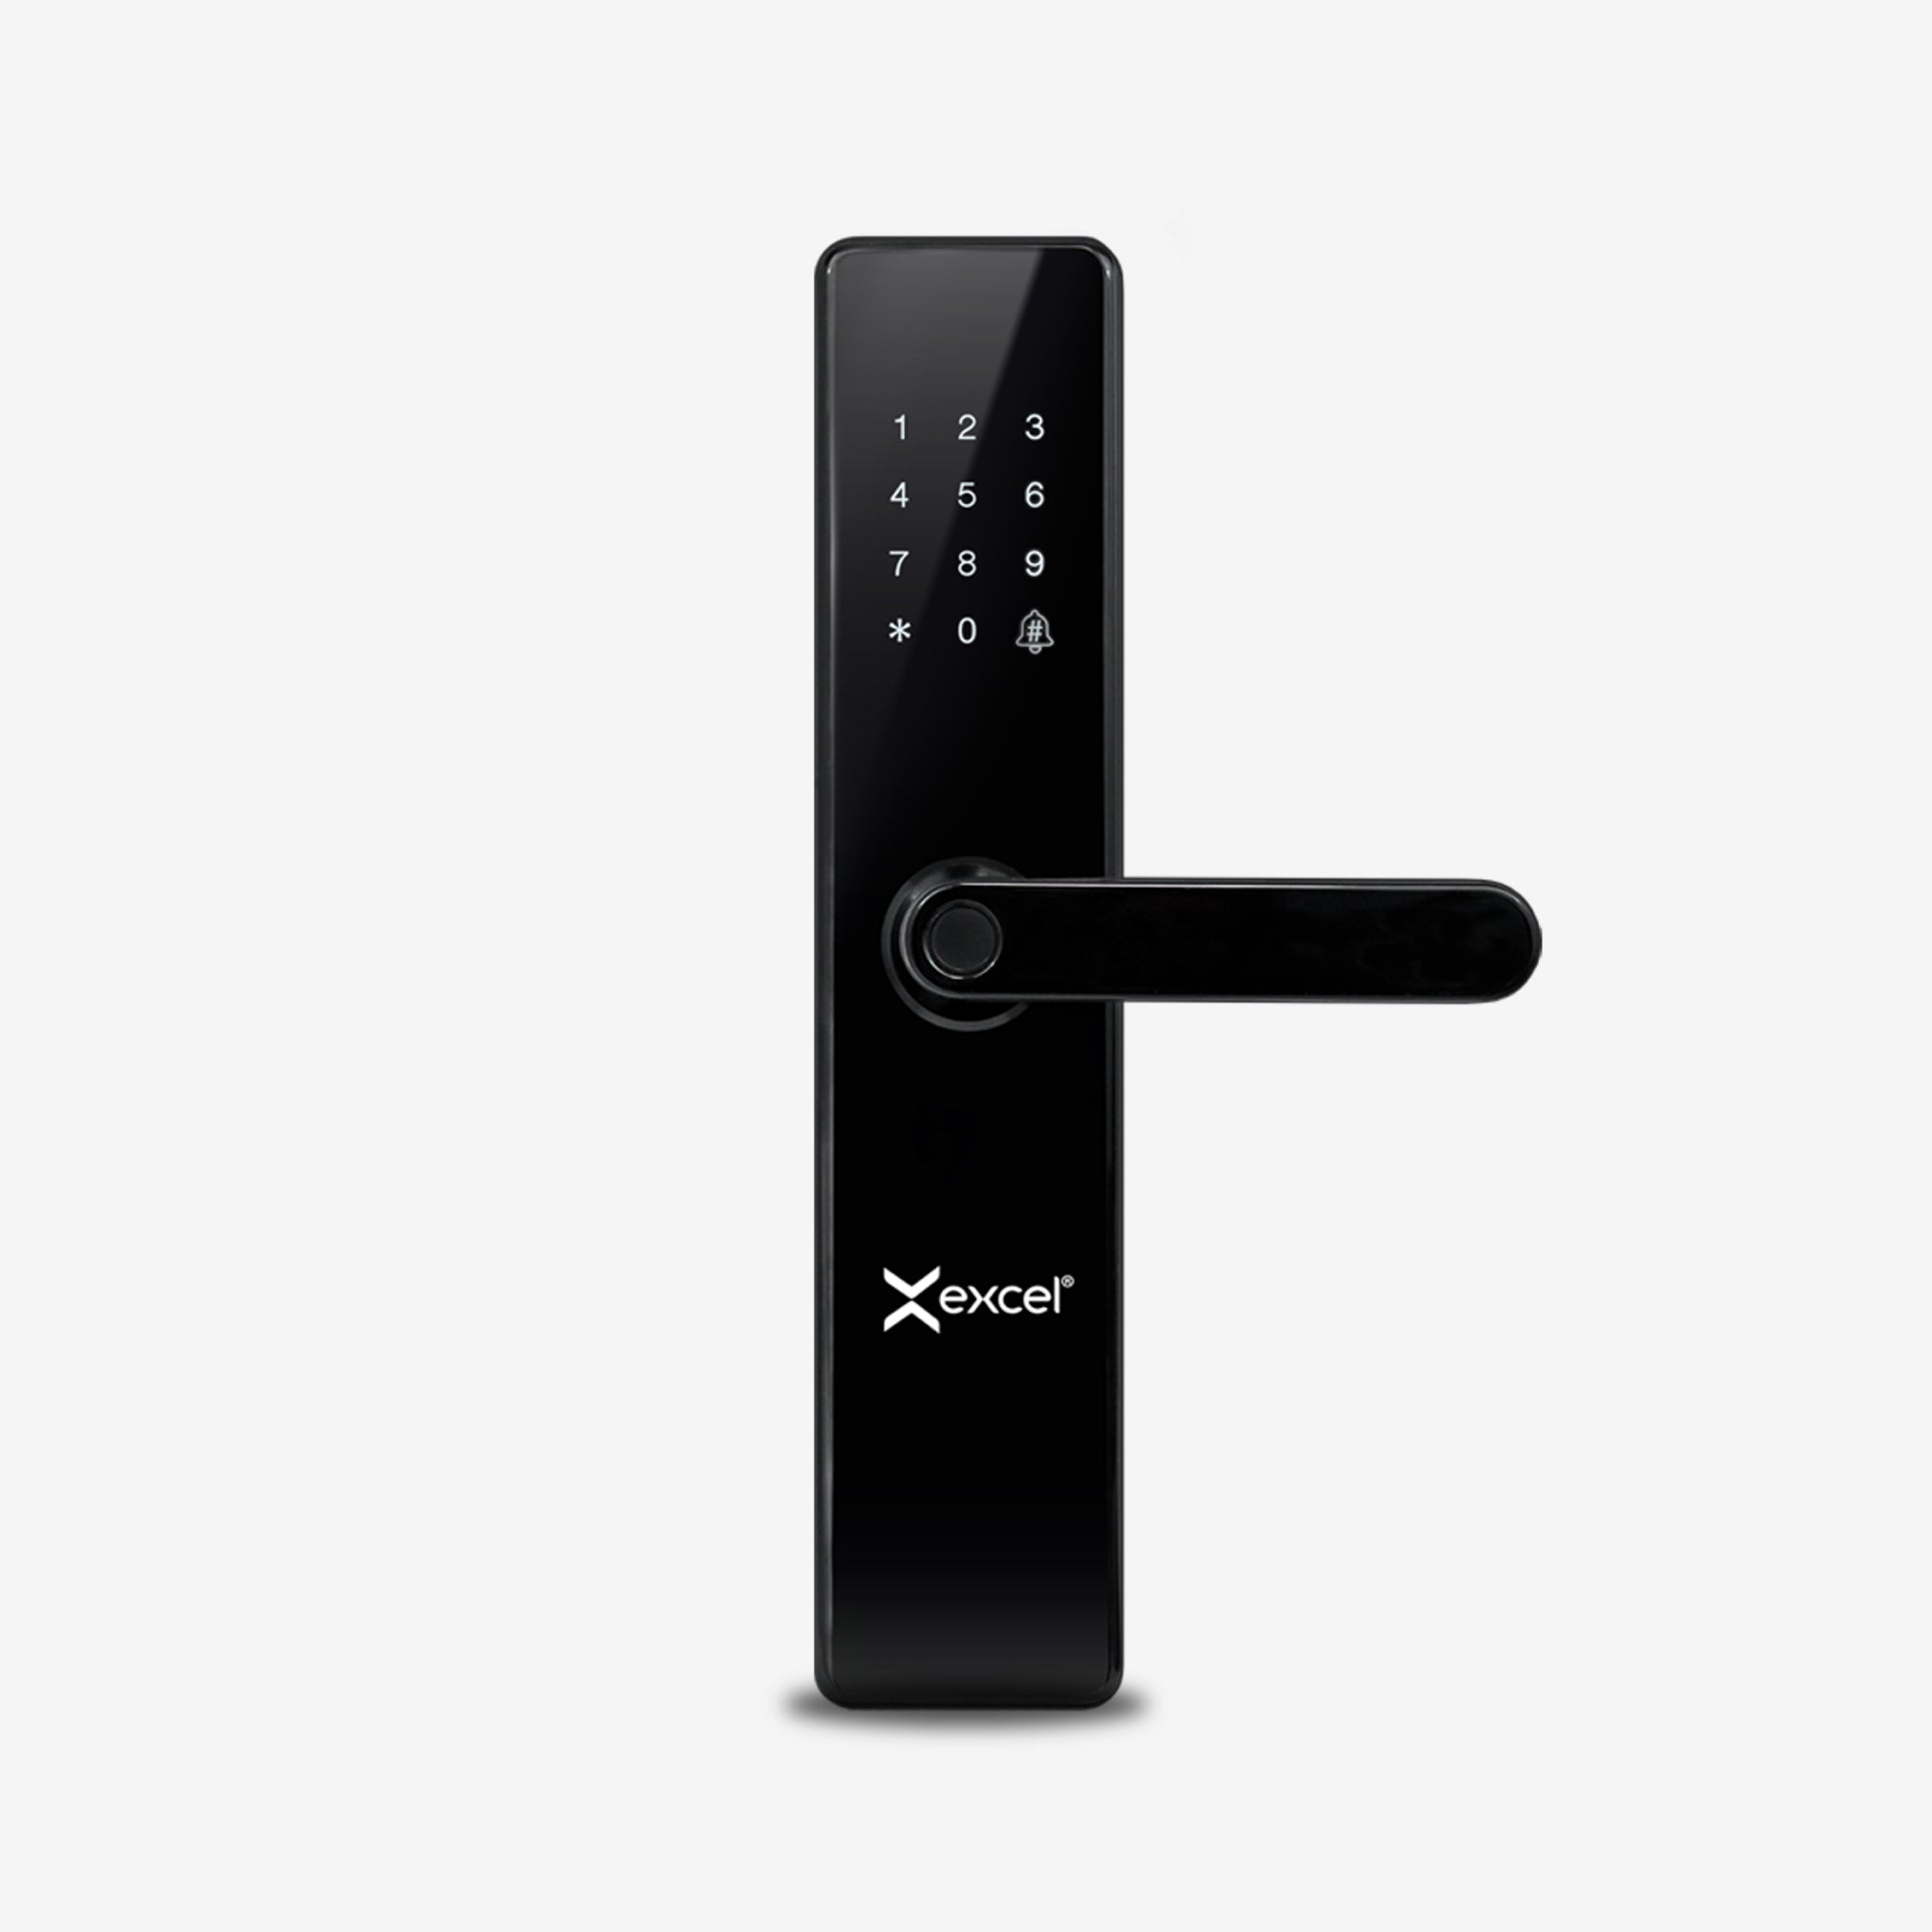 Cerradura de huella digital y panel touch numérico marca Excel Digital Doorlock, modelo Excel 203